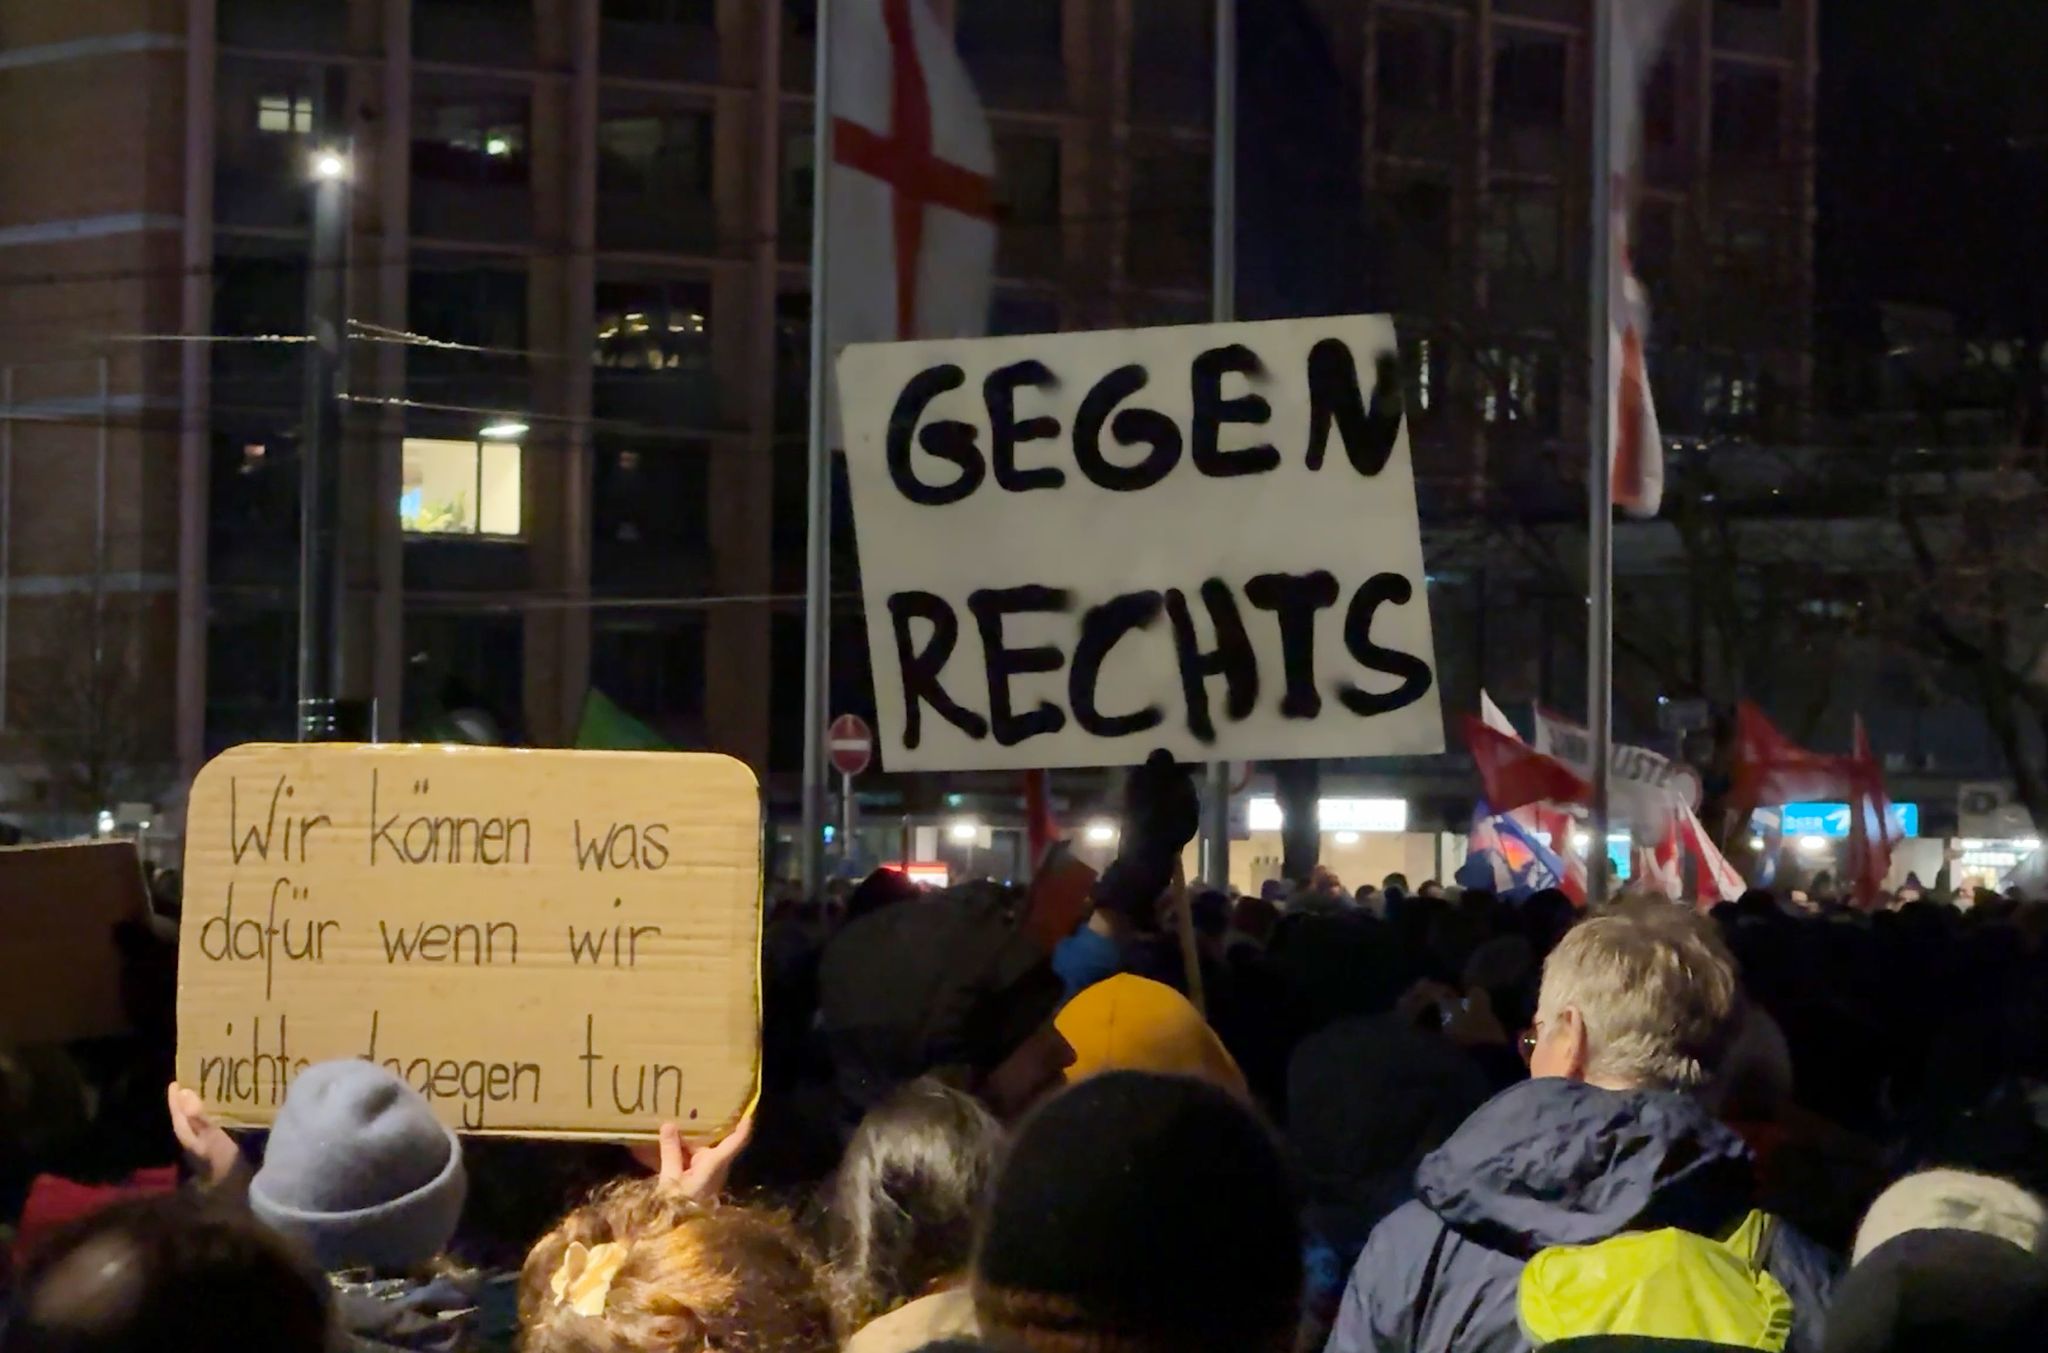 Nach Bekanntwerden des Treffens extremer Rechter in Potsdam gehen deutschlandweit Menschen auf die Straße - in Potsdam wollen auch die Behörden aktiv werden.